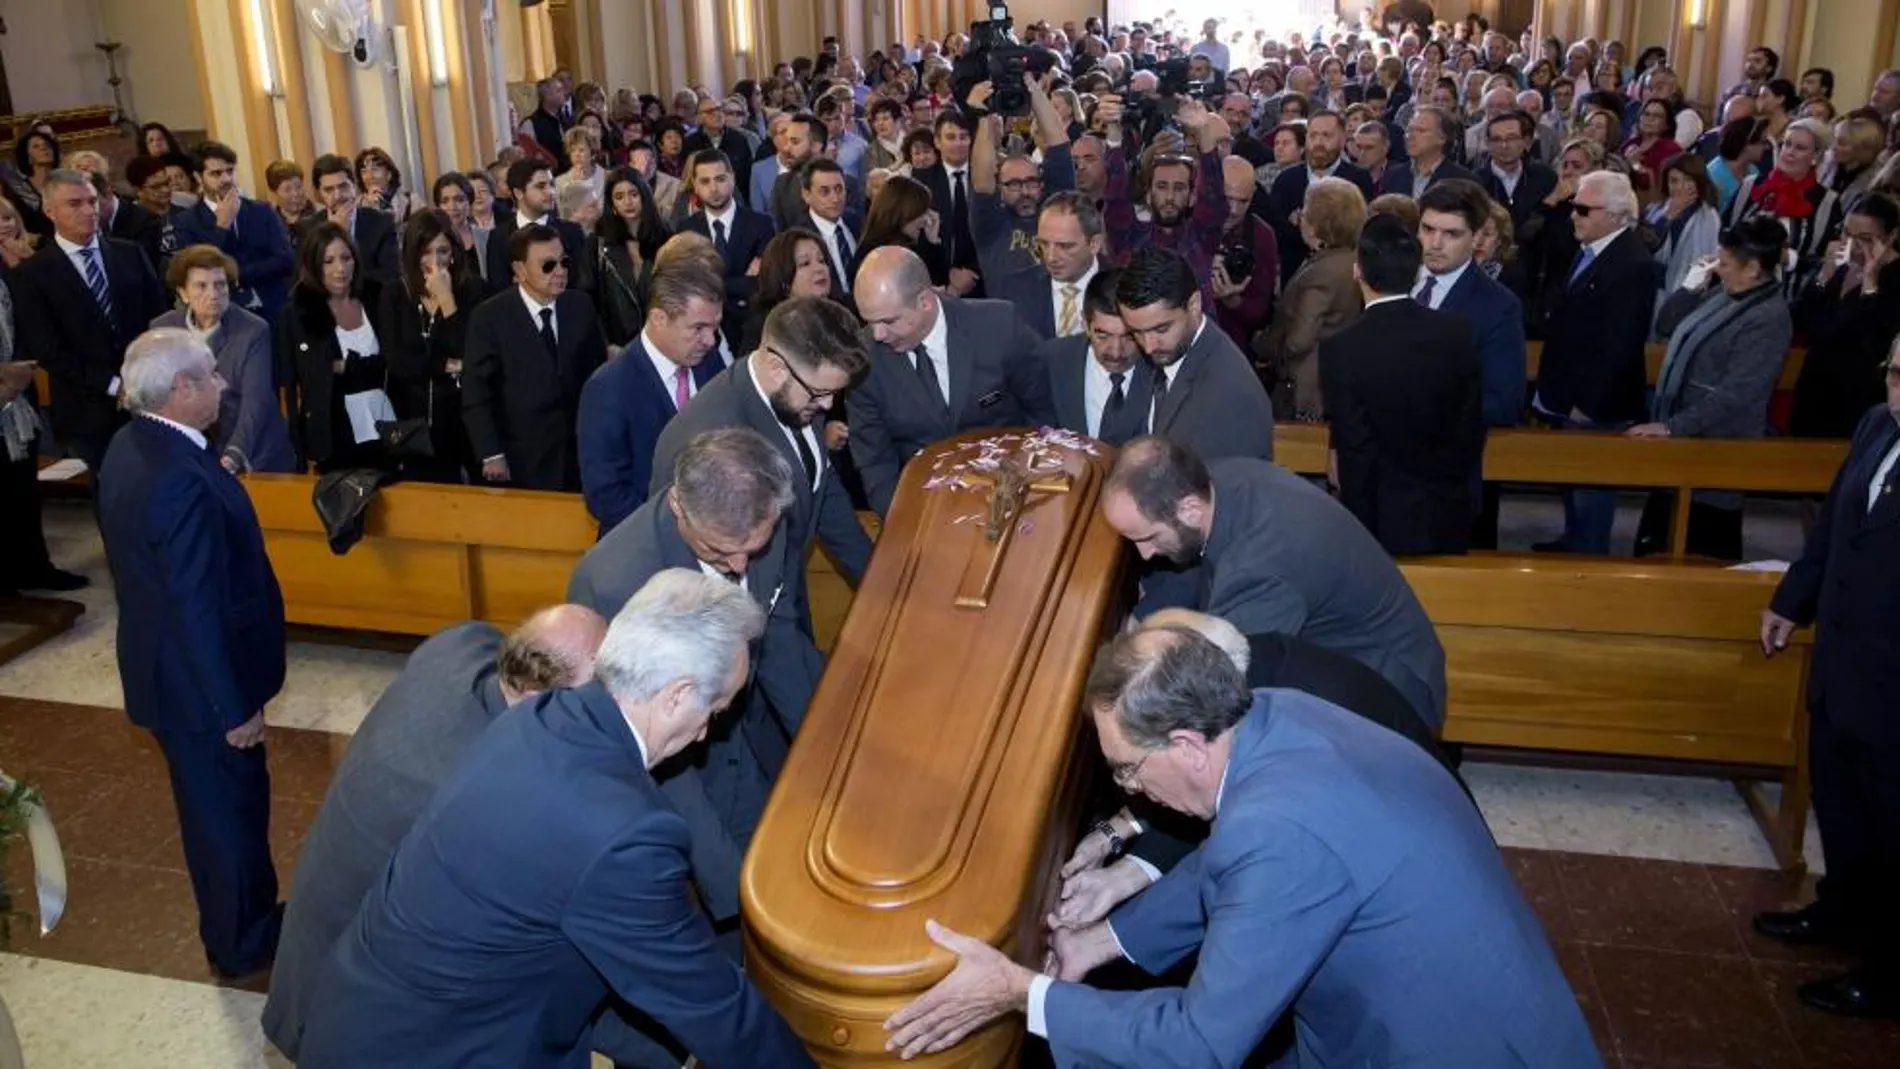 Familiares y amigos trasladan el féretro con los restos mortales del popular humorista malagueño. EFE/Daniel Pérez